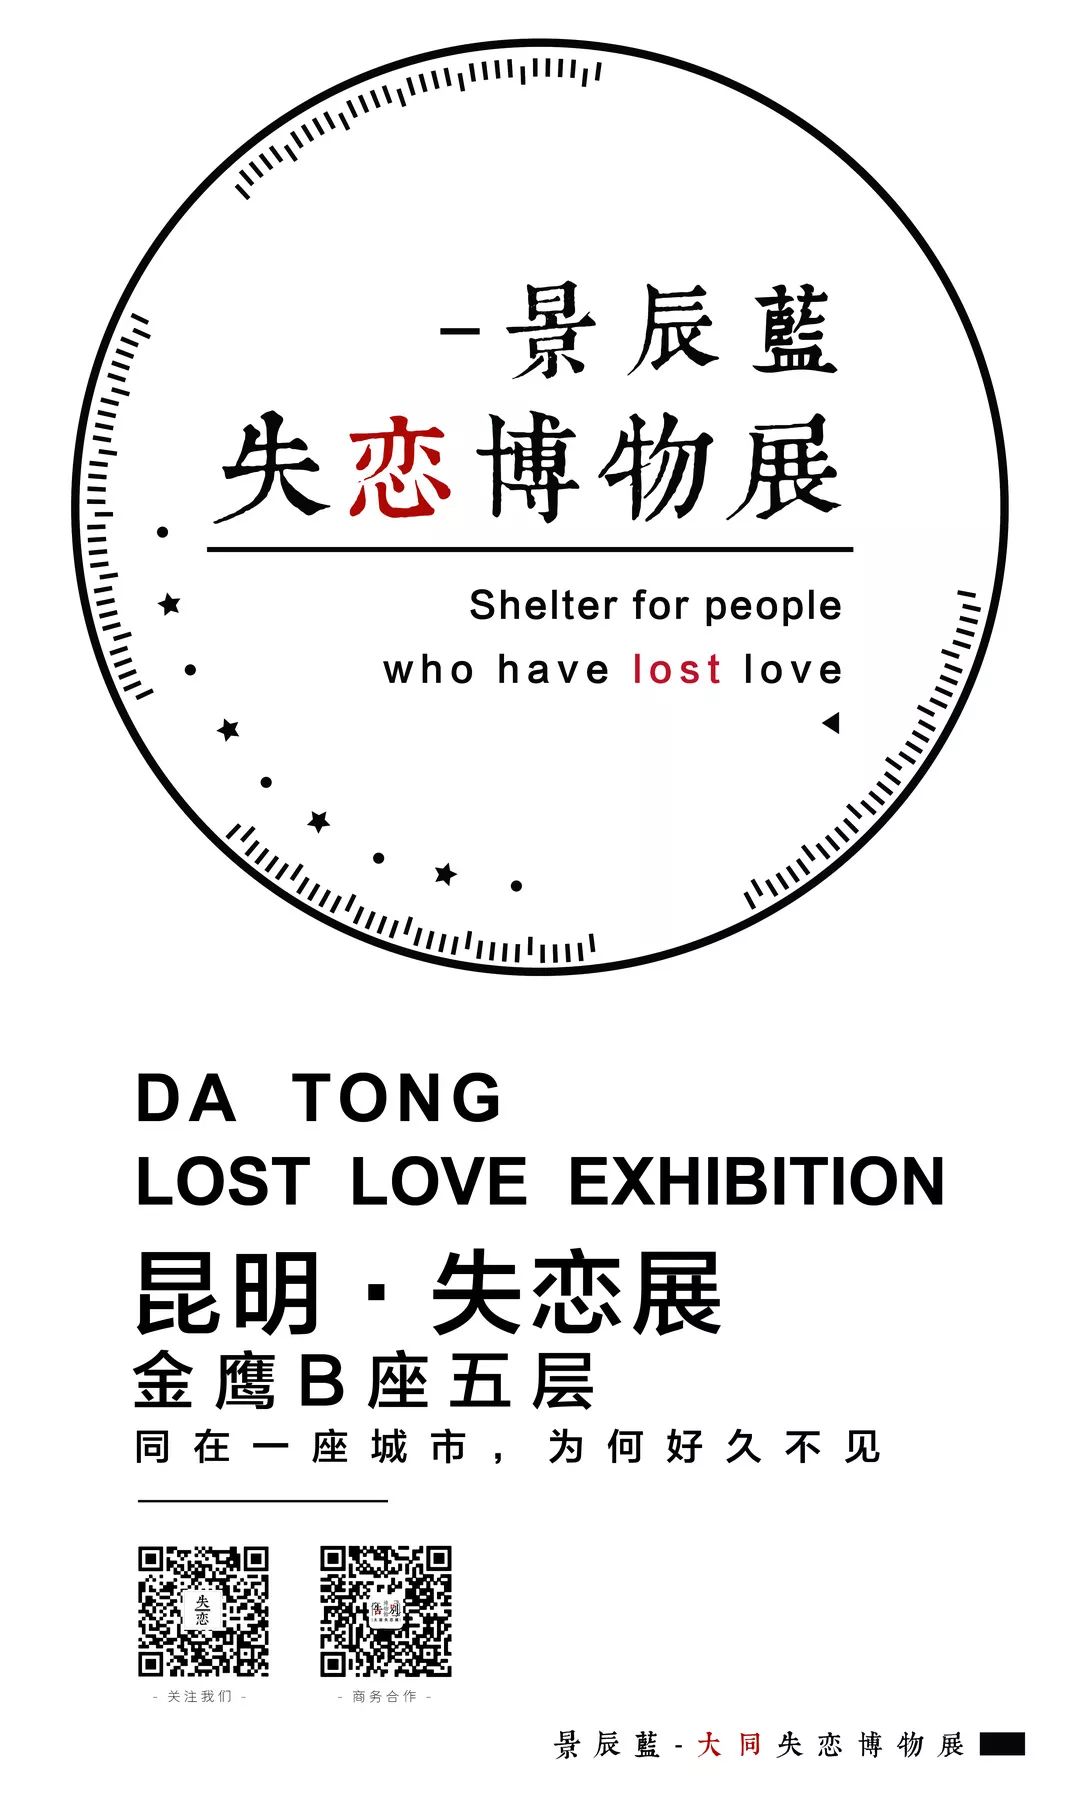 失恋博物馆logo图片